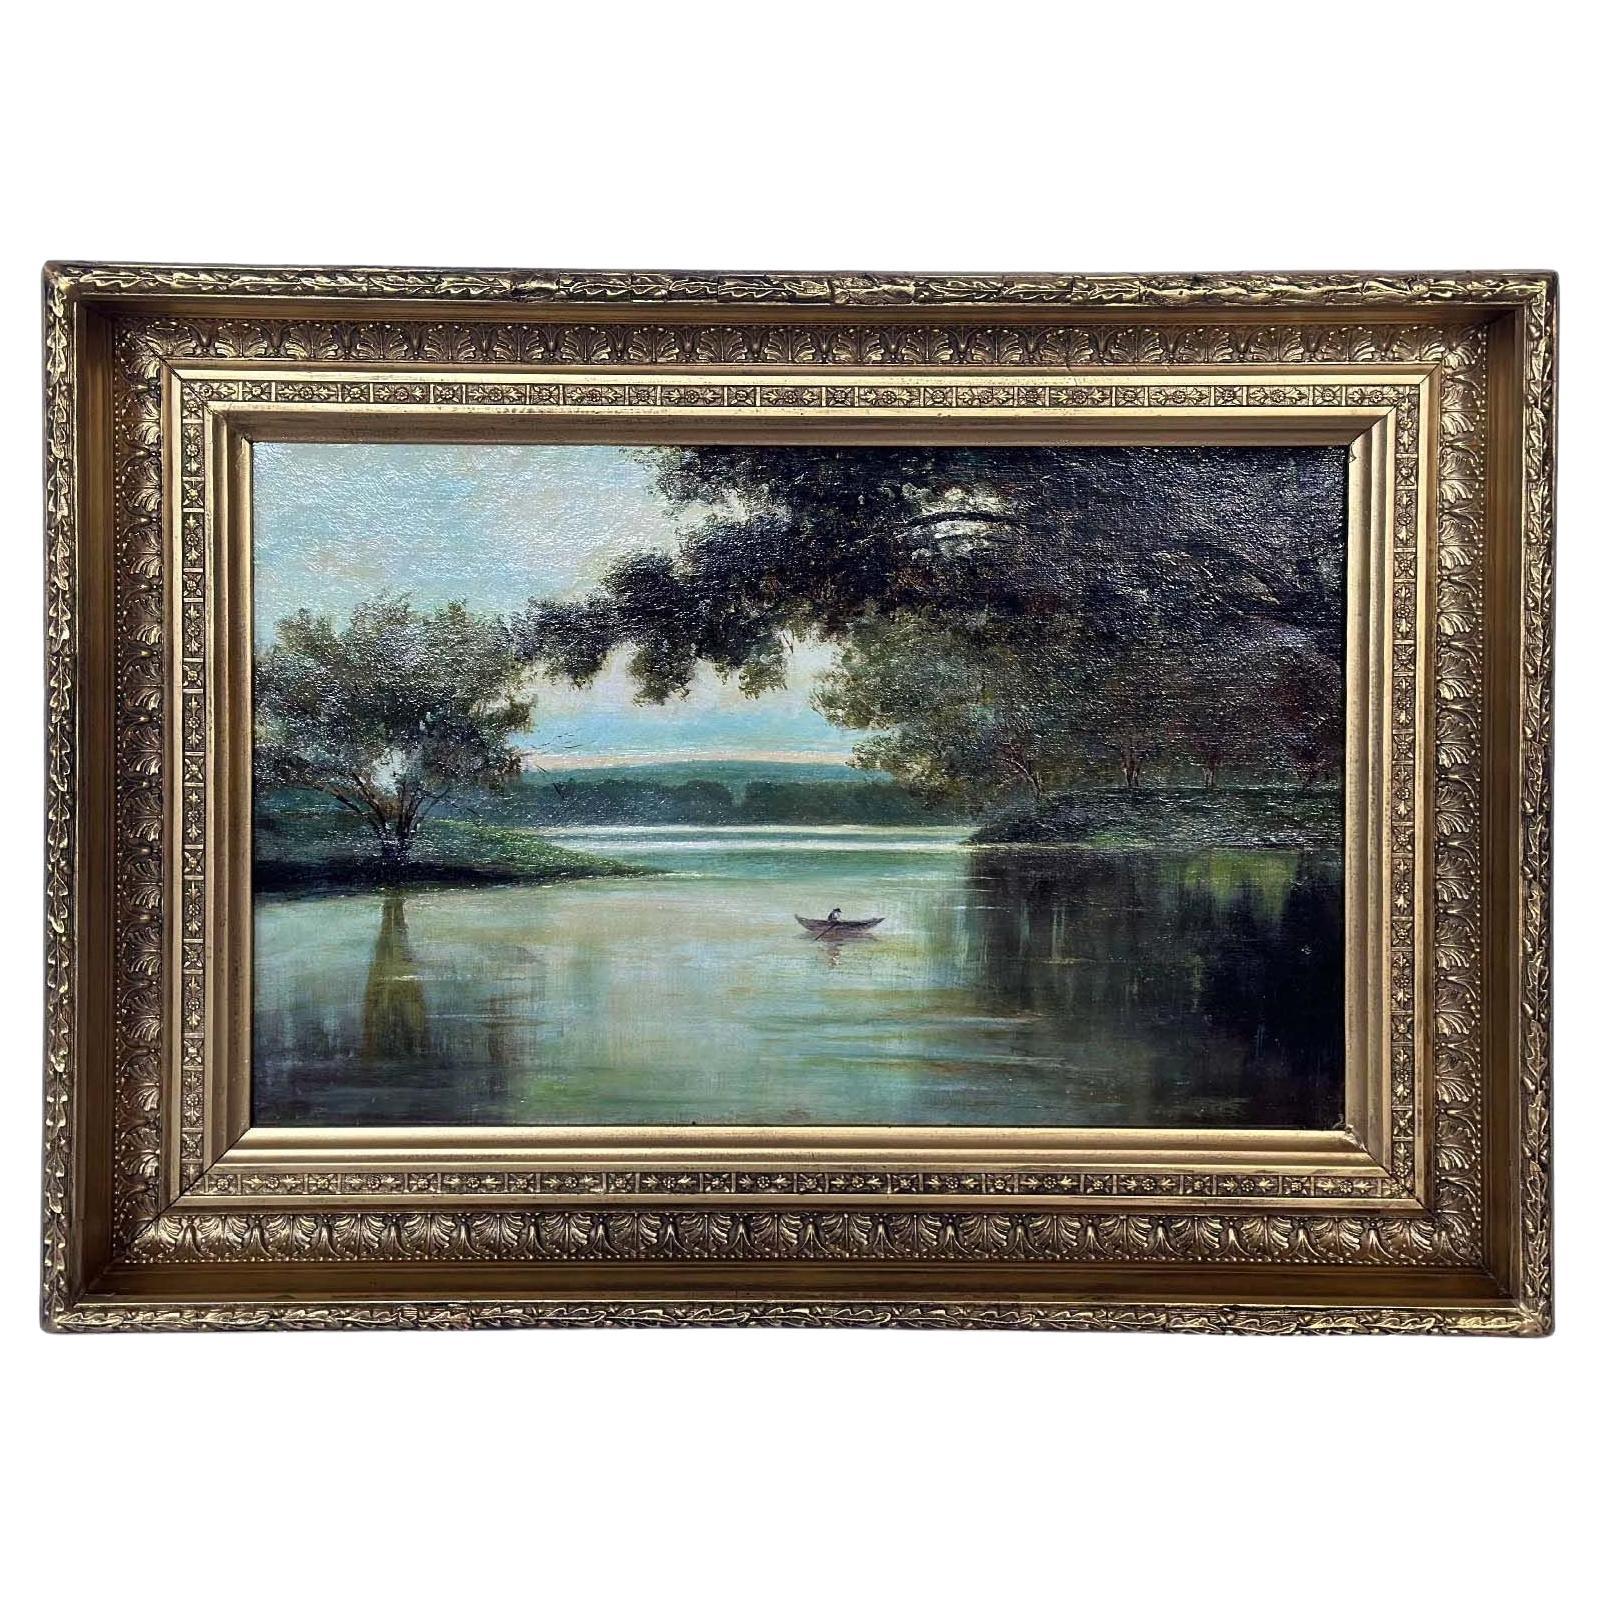 Huile sur toile italienne du 19ème siècle représentant une vue de lac